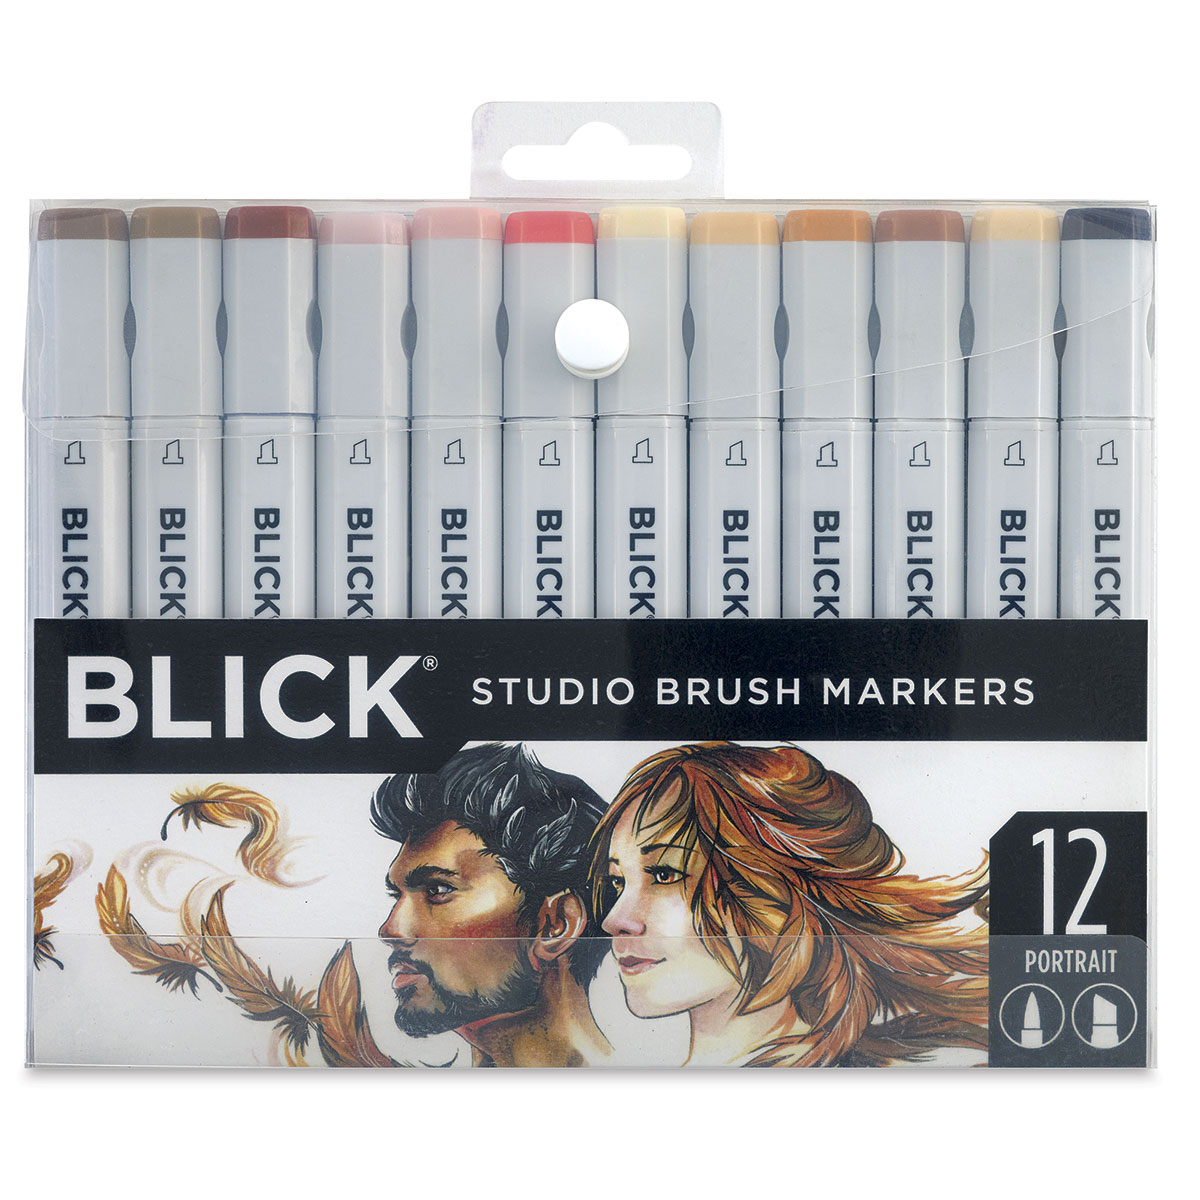 Blick Studio Brush Markers - Set of 144